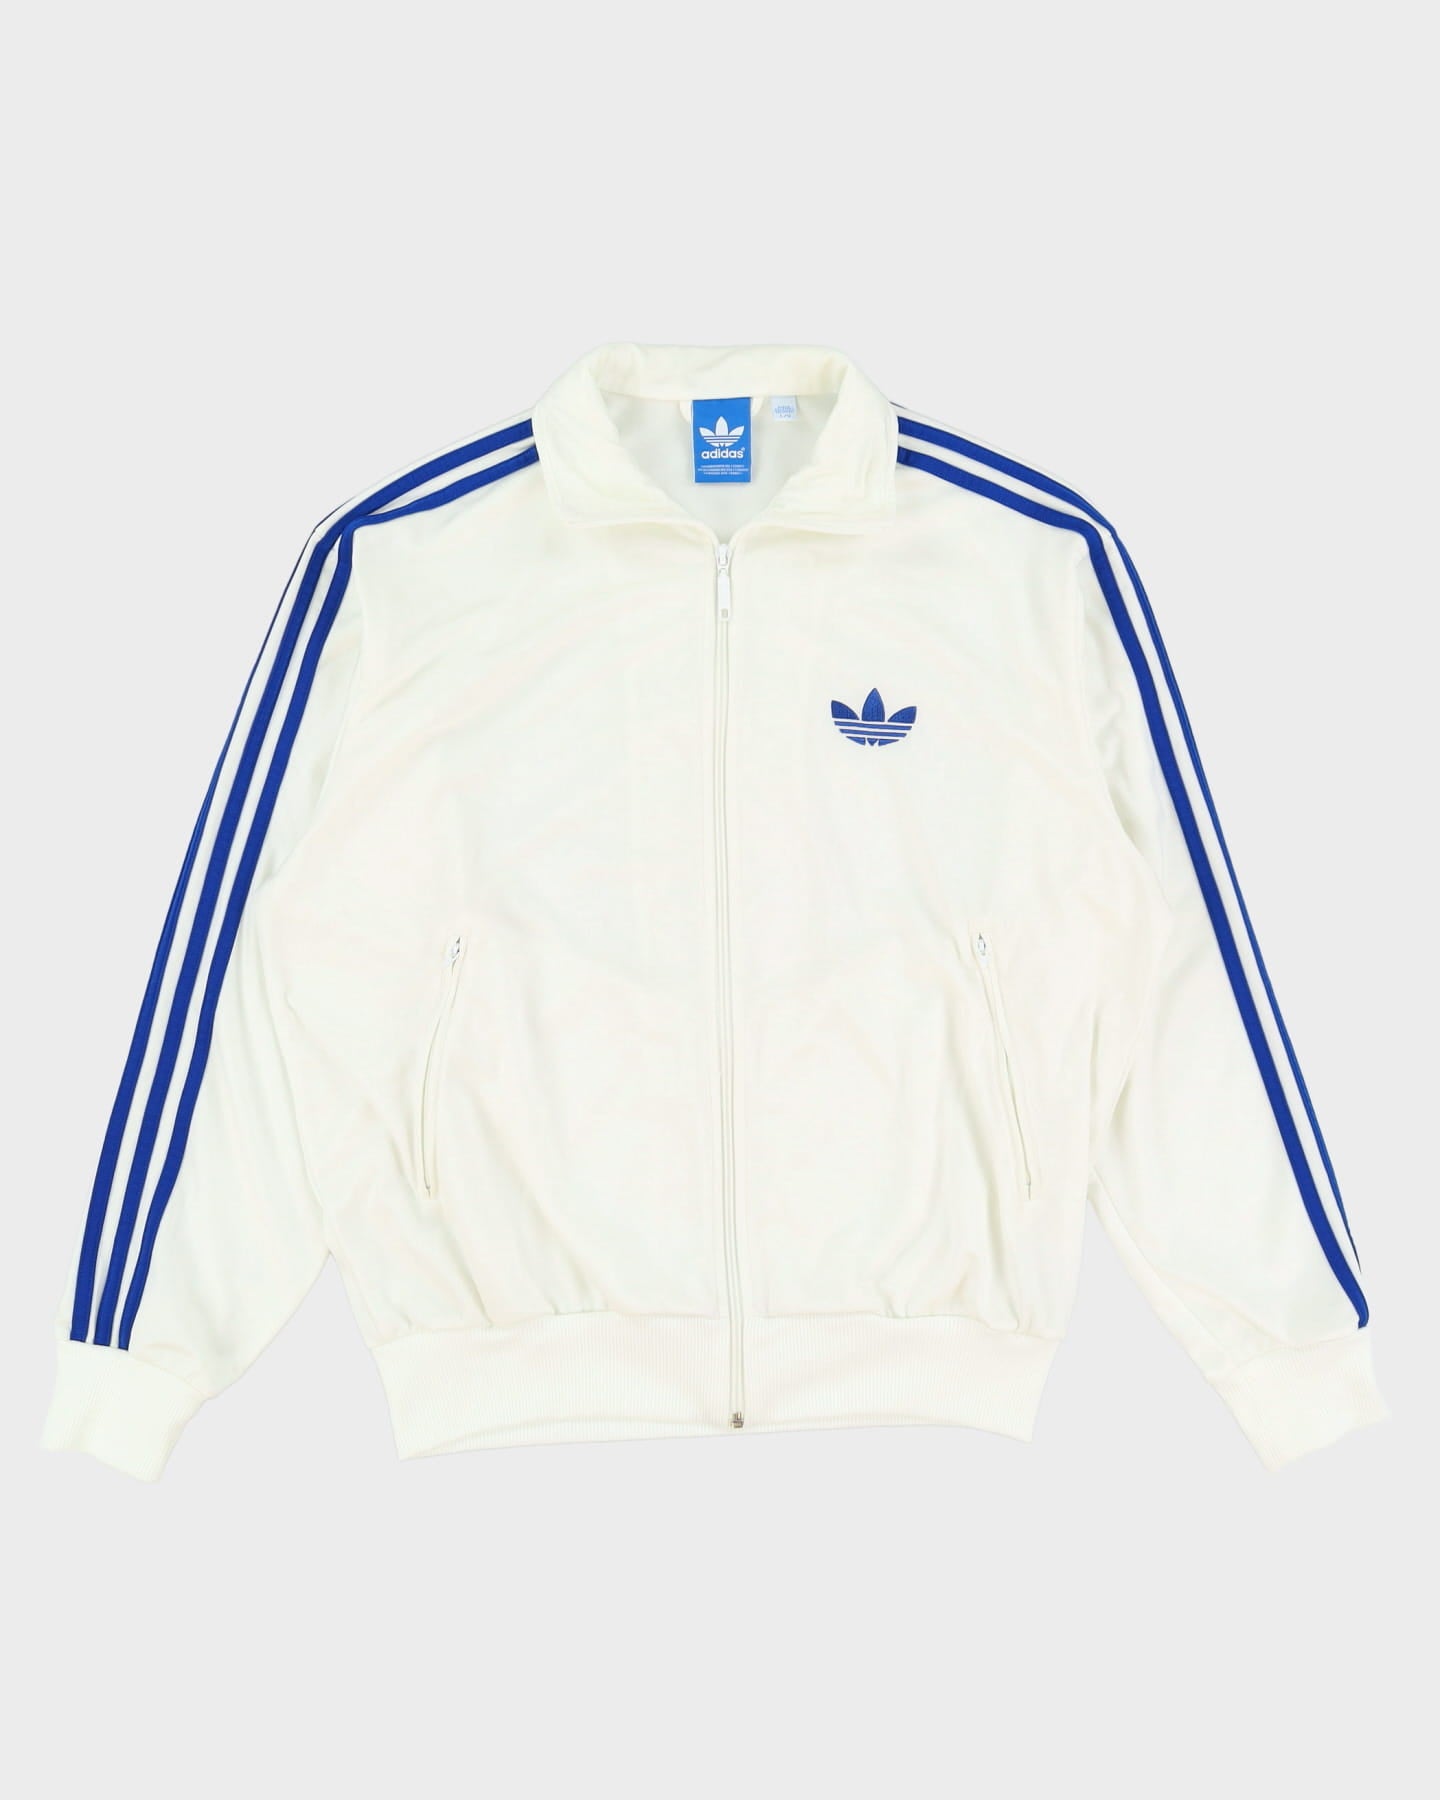 Adidas Blue / White Track Jacket - XL